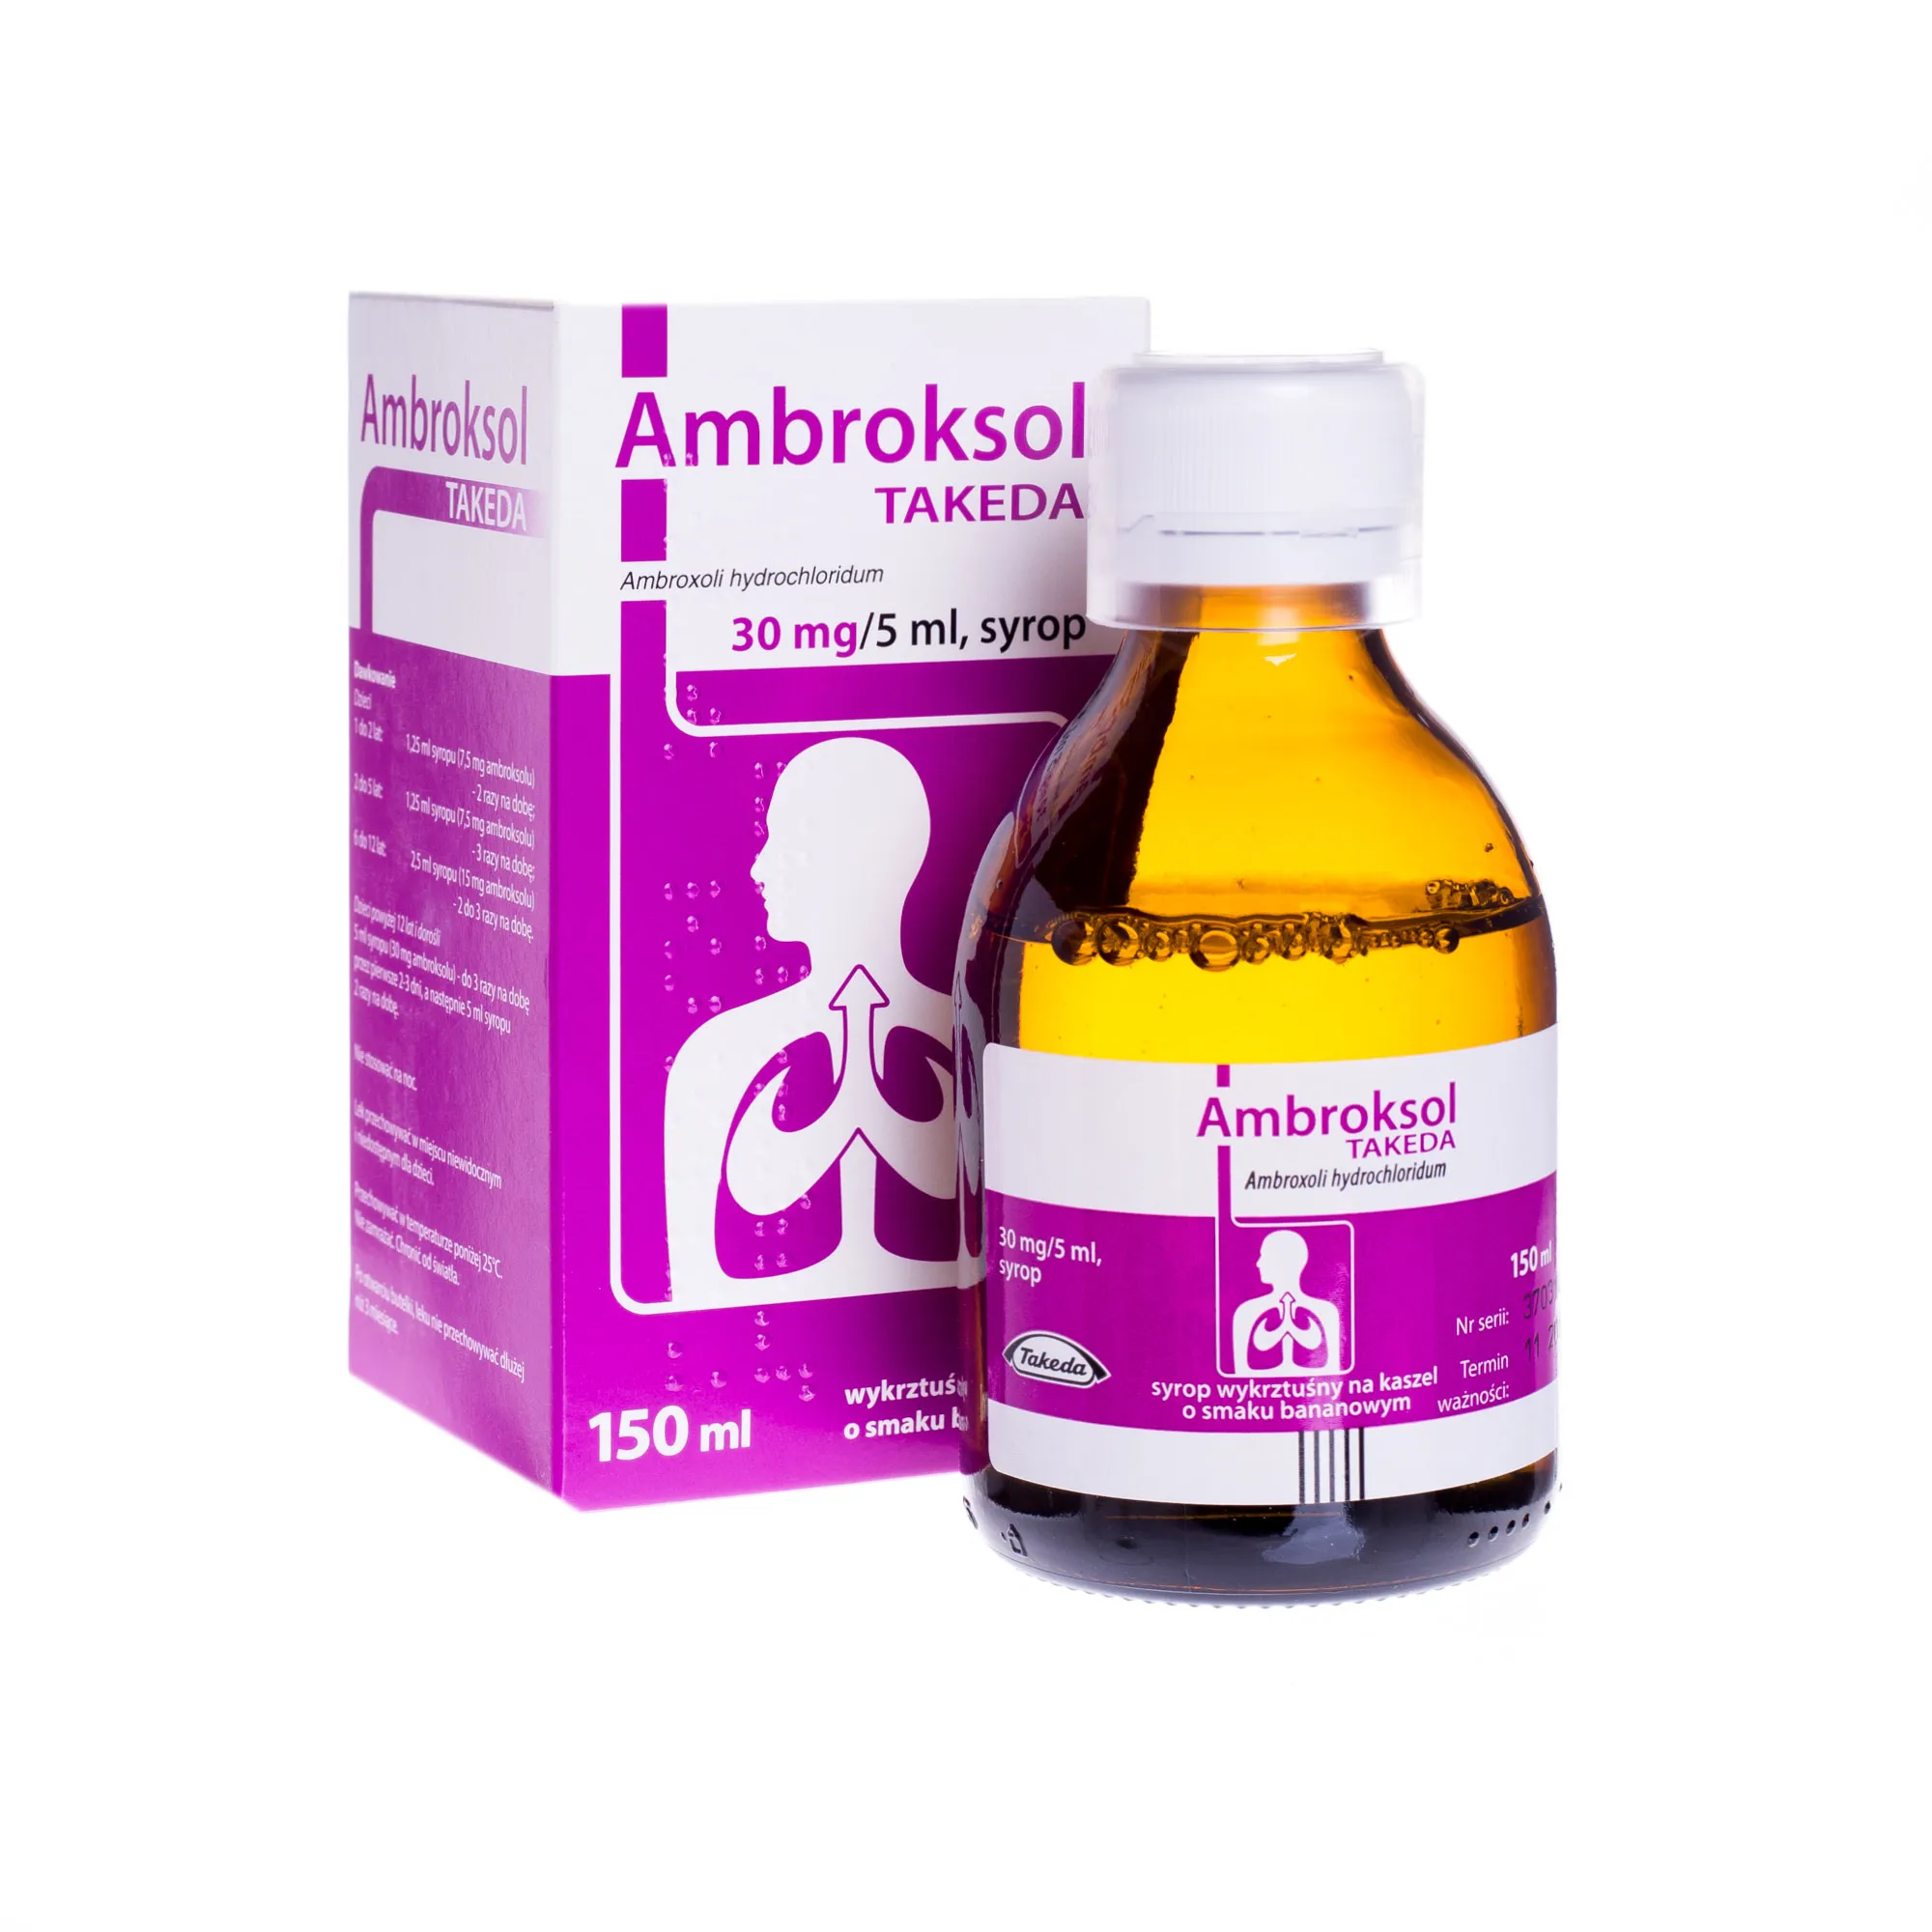 Ambroksol Takeda 30 mg/5 ml, syrop, 150 ml, smak bananowy 